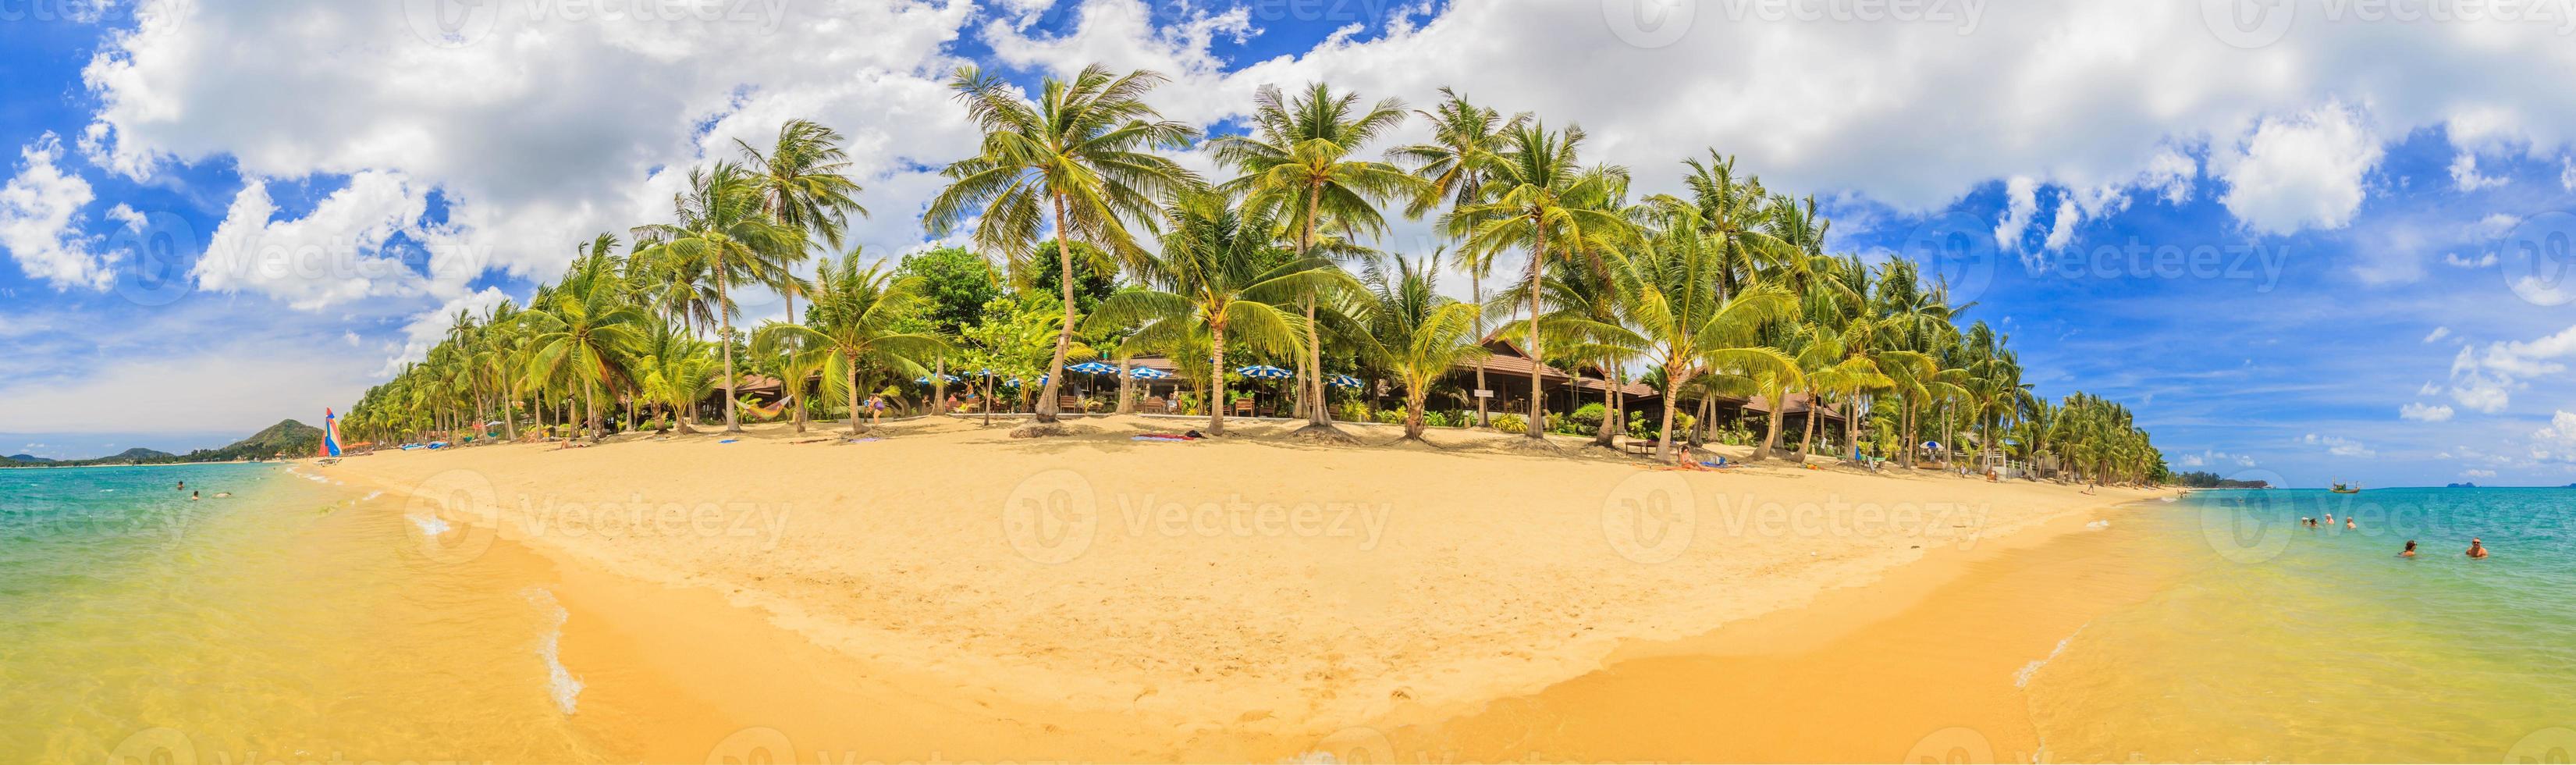 imagen panorámica de una playa en Tailandia durante el día foto